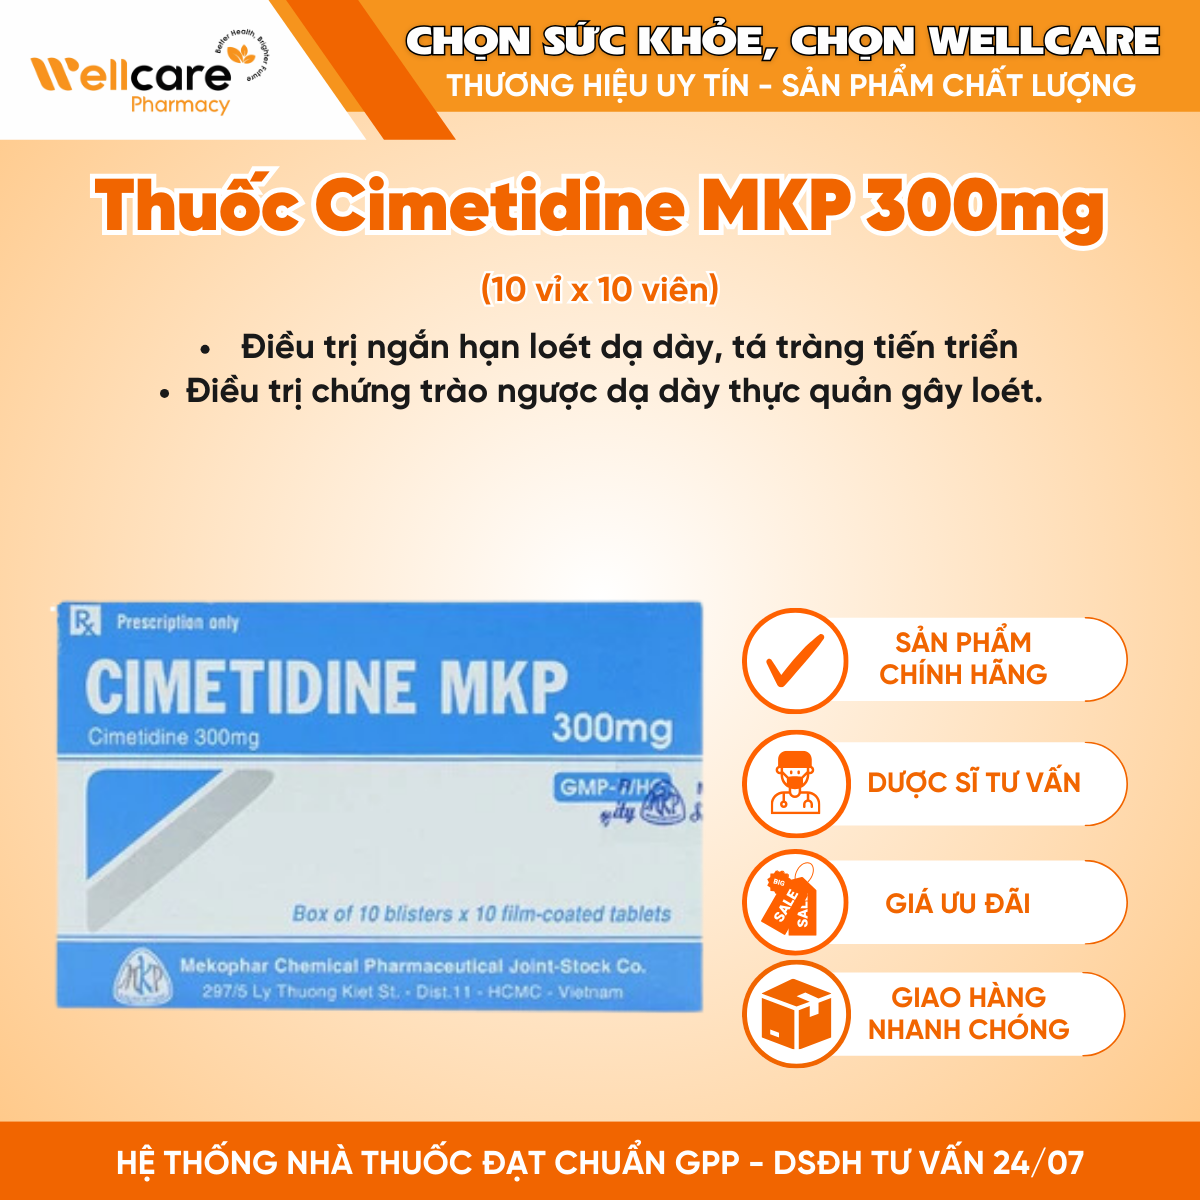 Thuốc Cimetidine MKP 300mg trị loét dạ dày, tá tràng (10 vỉ x 10 viên)